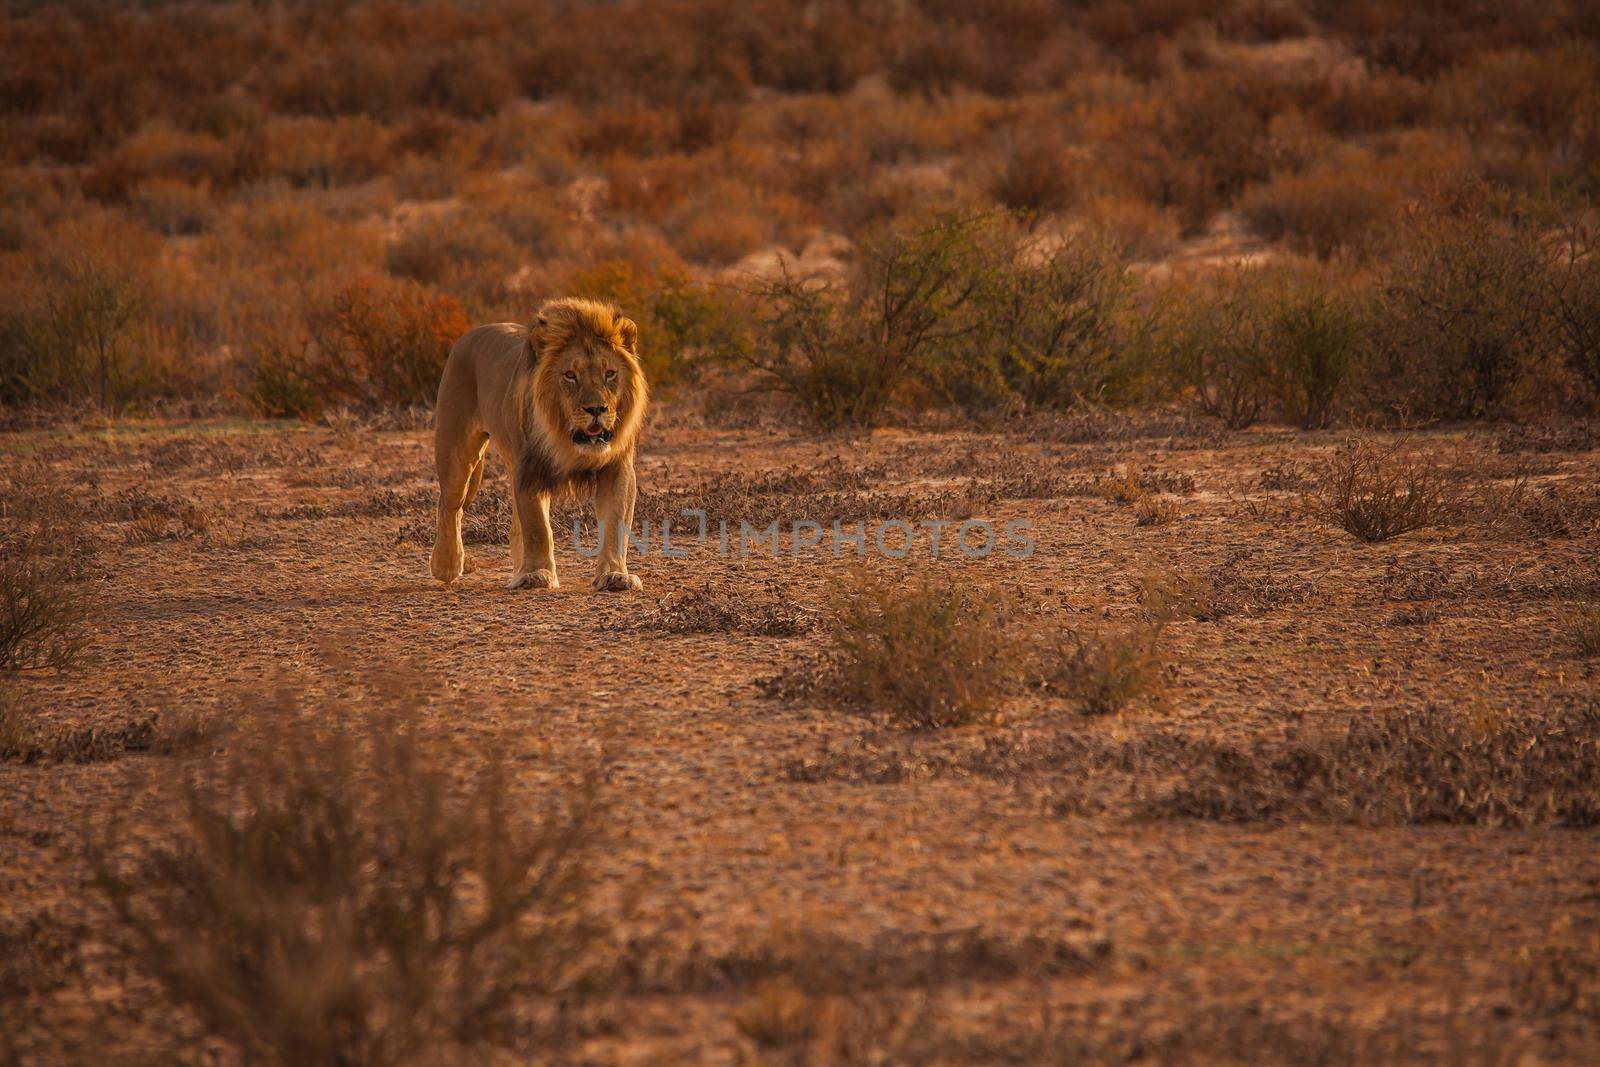 Kalahari Lion (Panthera leo) 5125 by kobus_peche